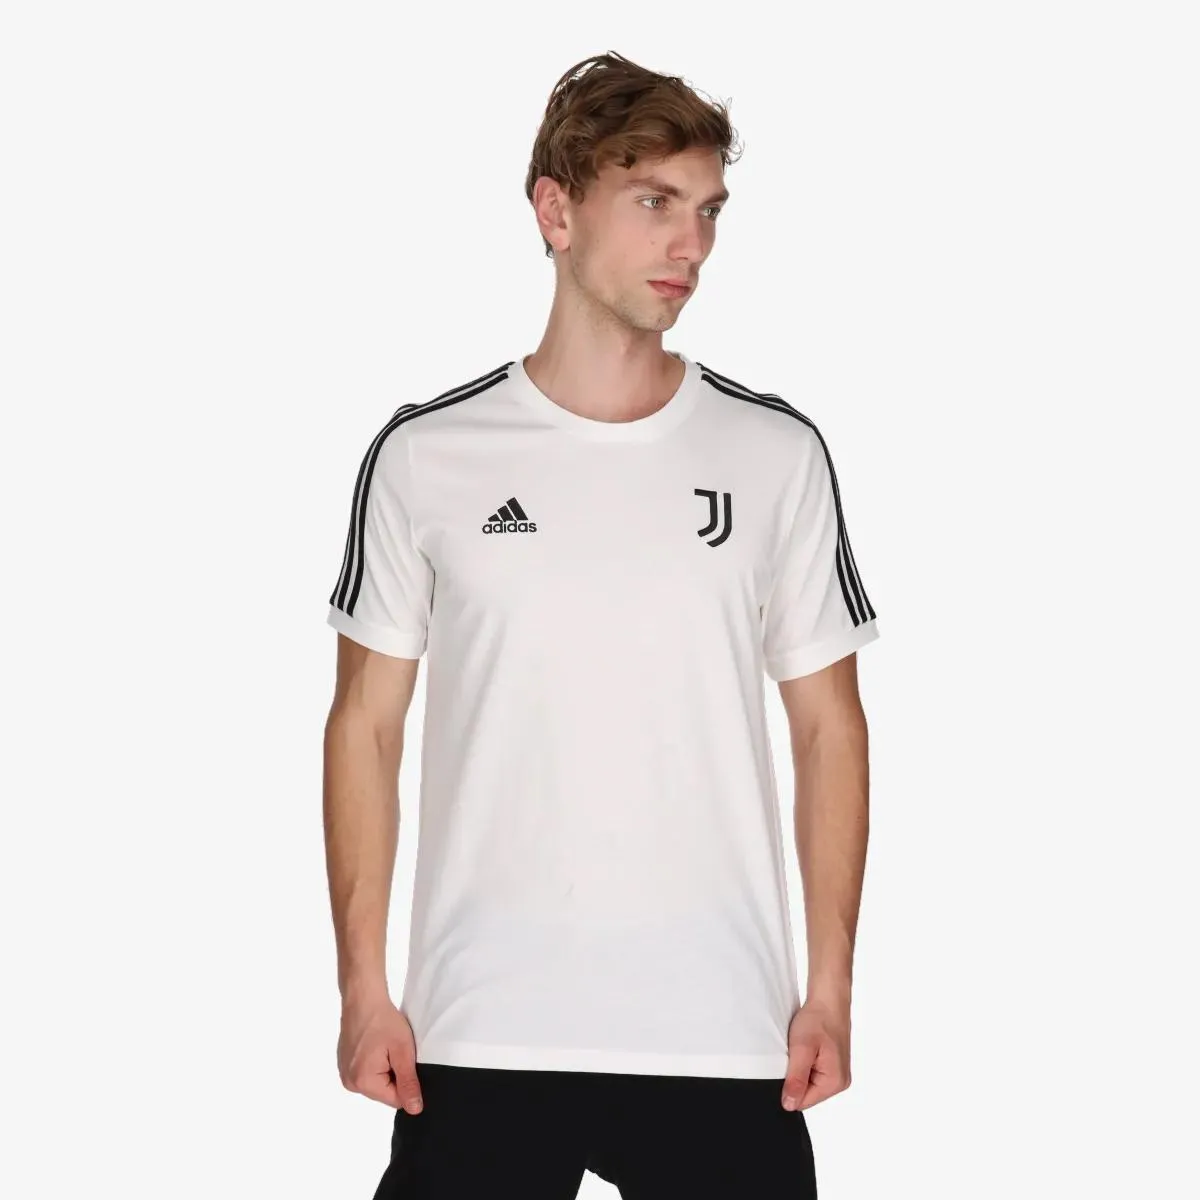 adidas T-shirt Juventus 